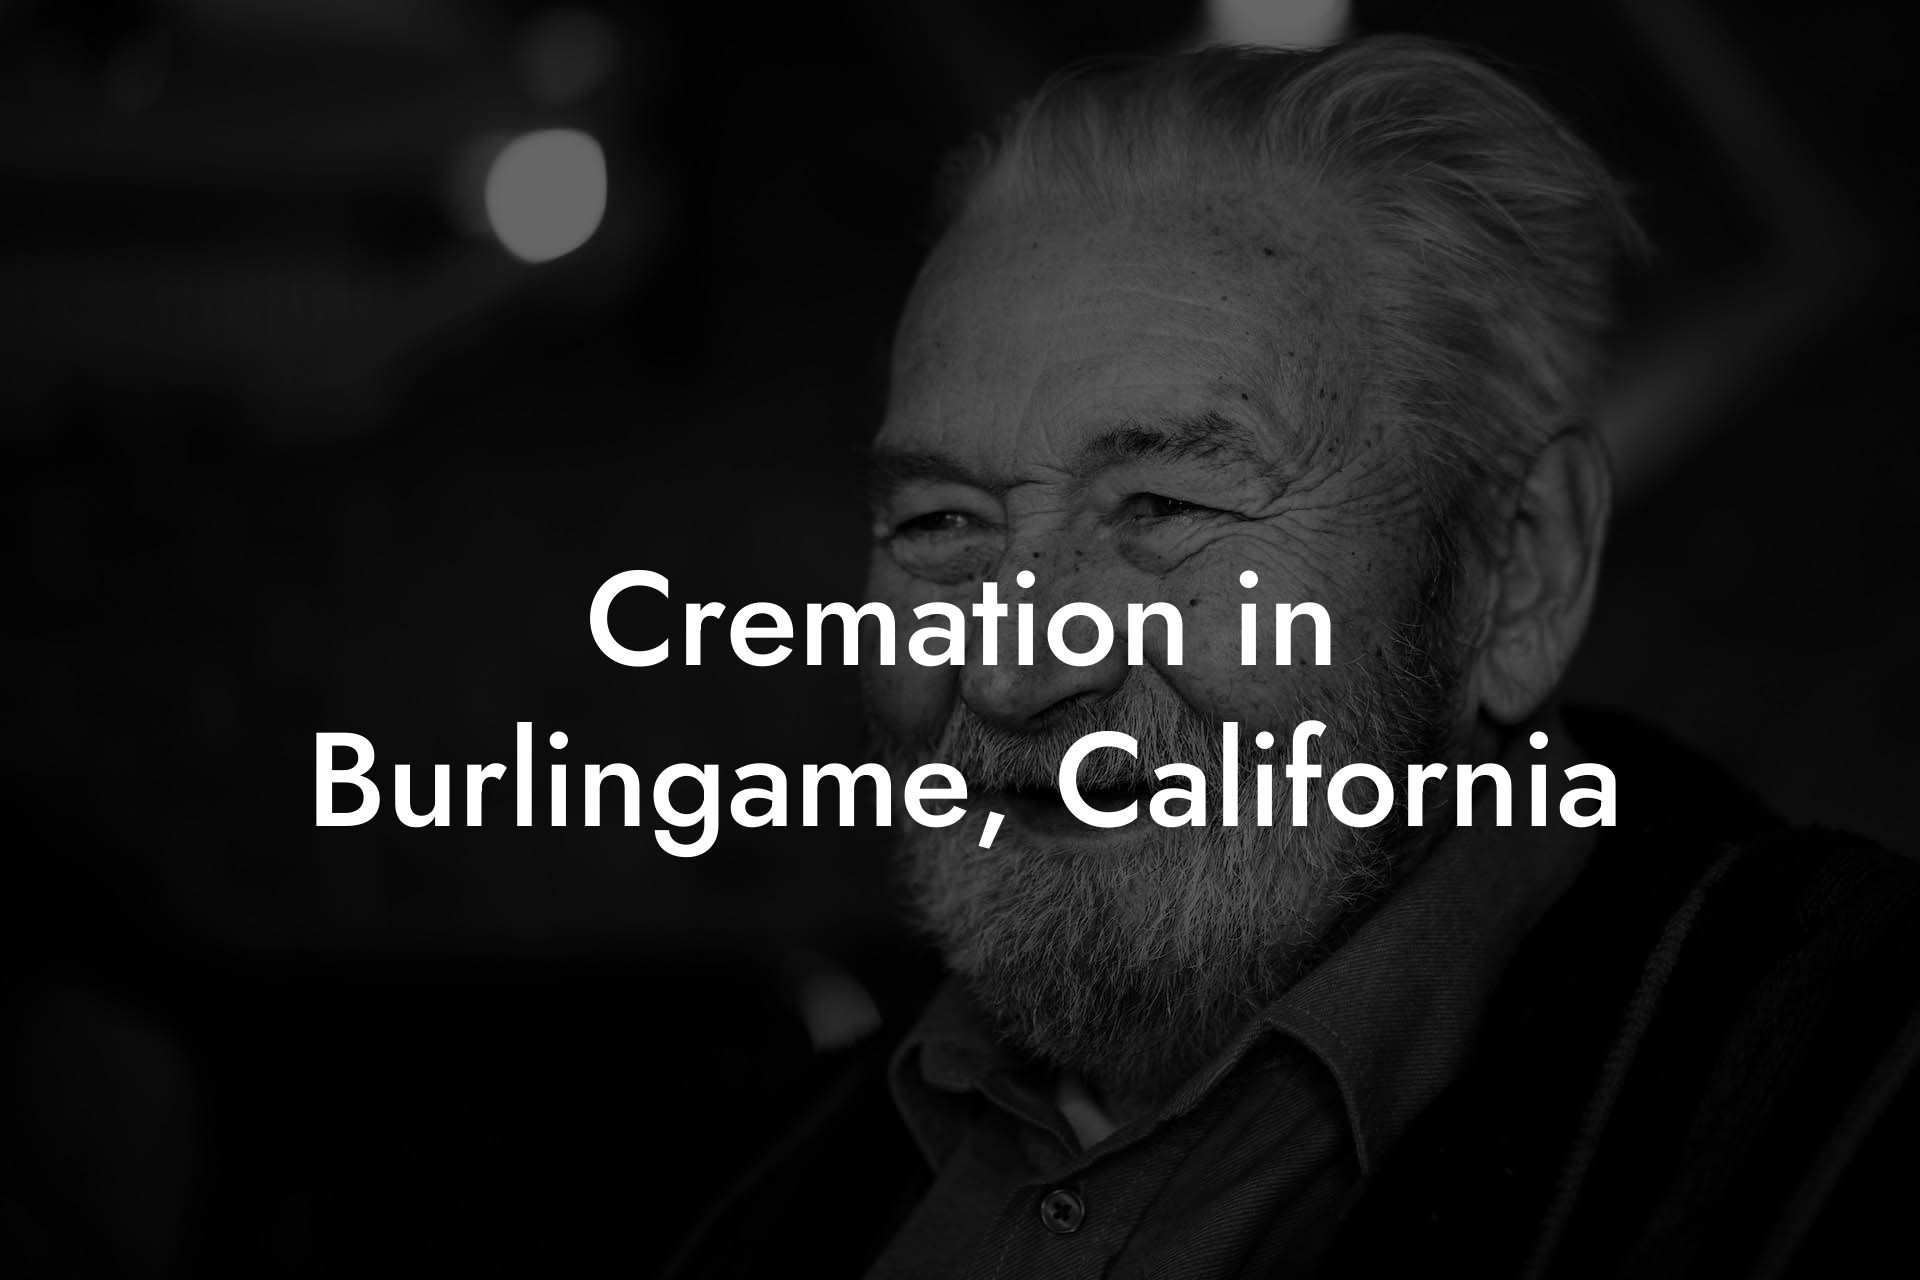 Cremation in Burlingame, California